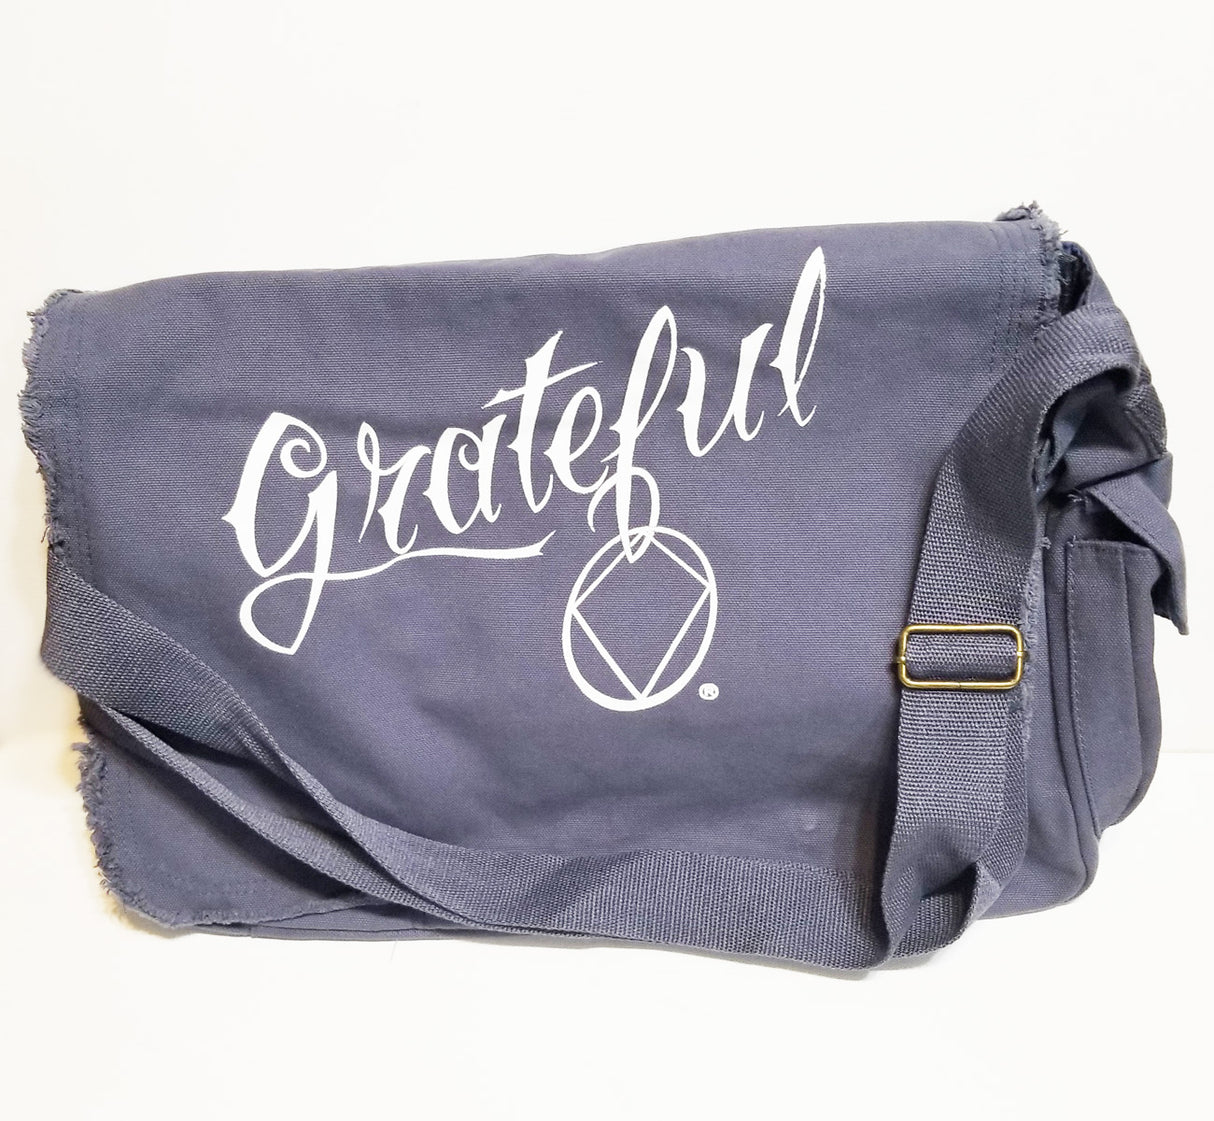 Bag- Grateful Messenger Bag